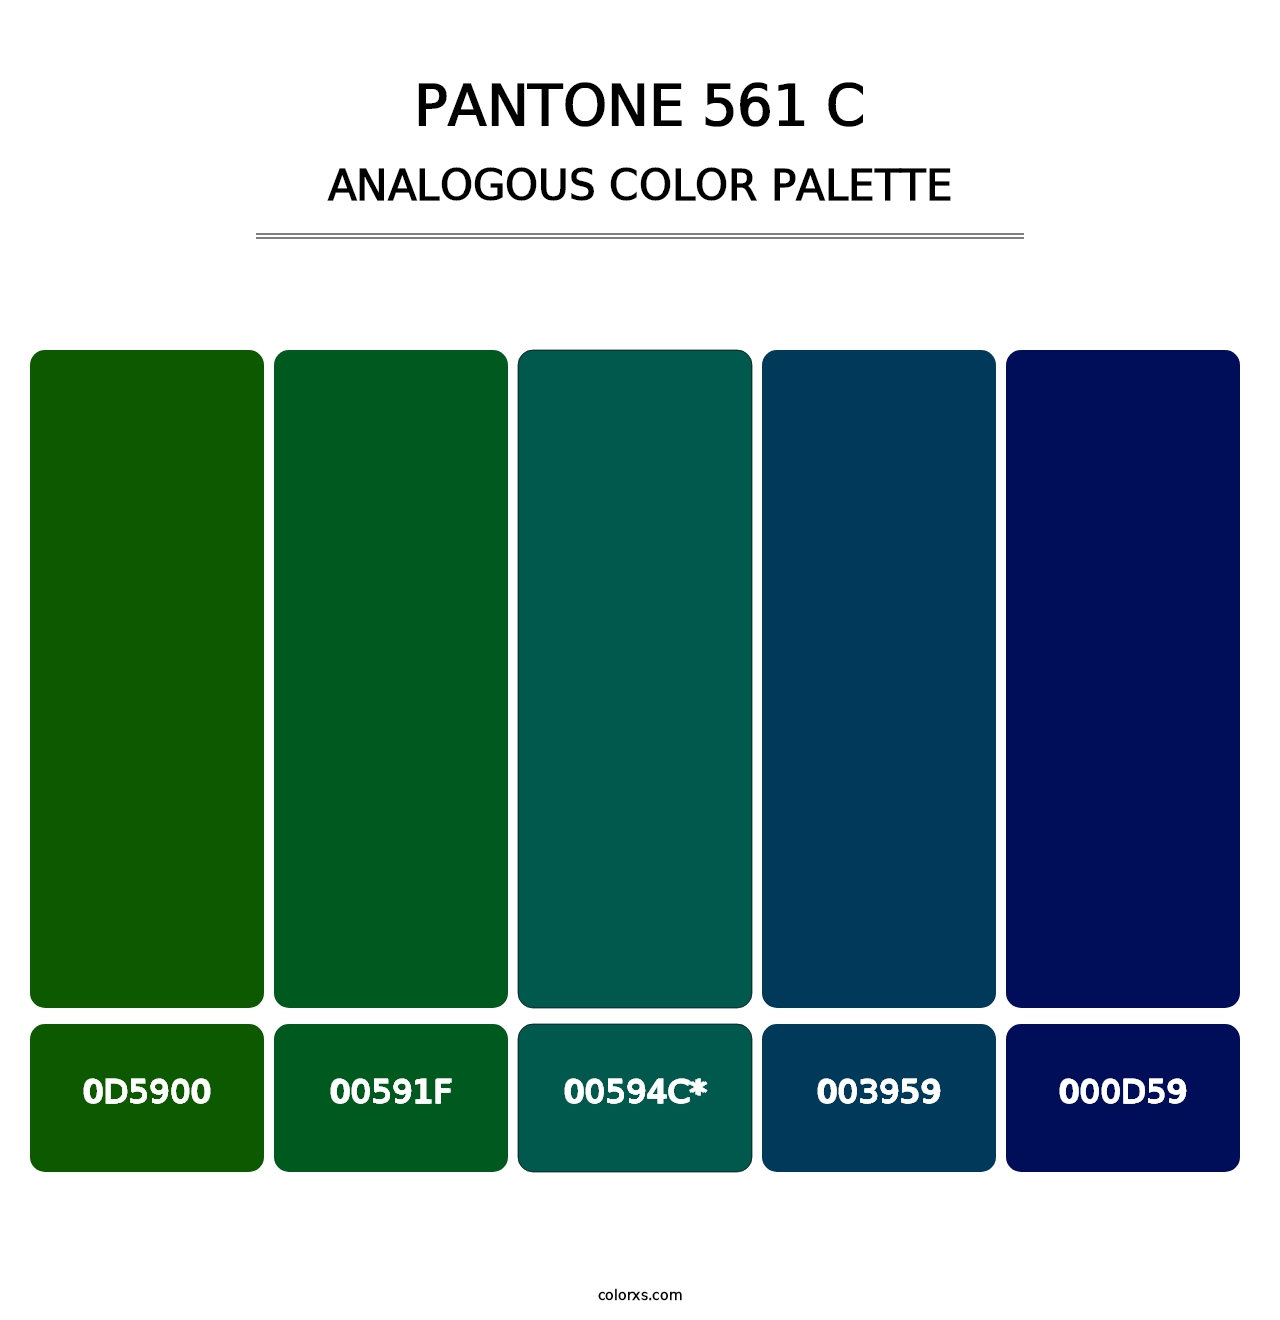 PANTONE 561 C - Analogous Color Palette